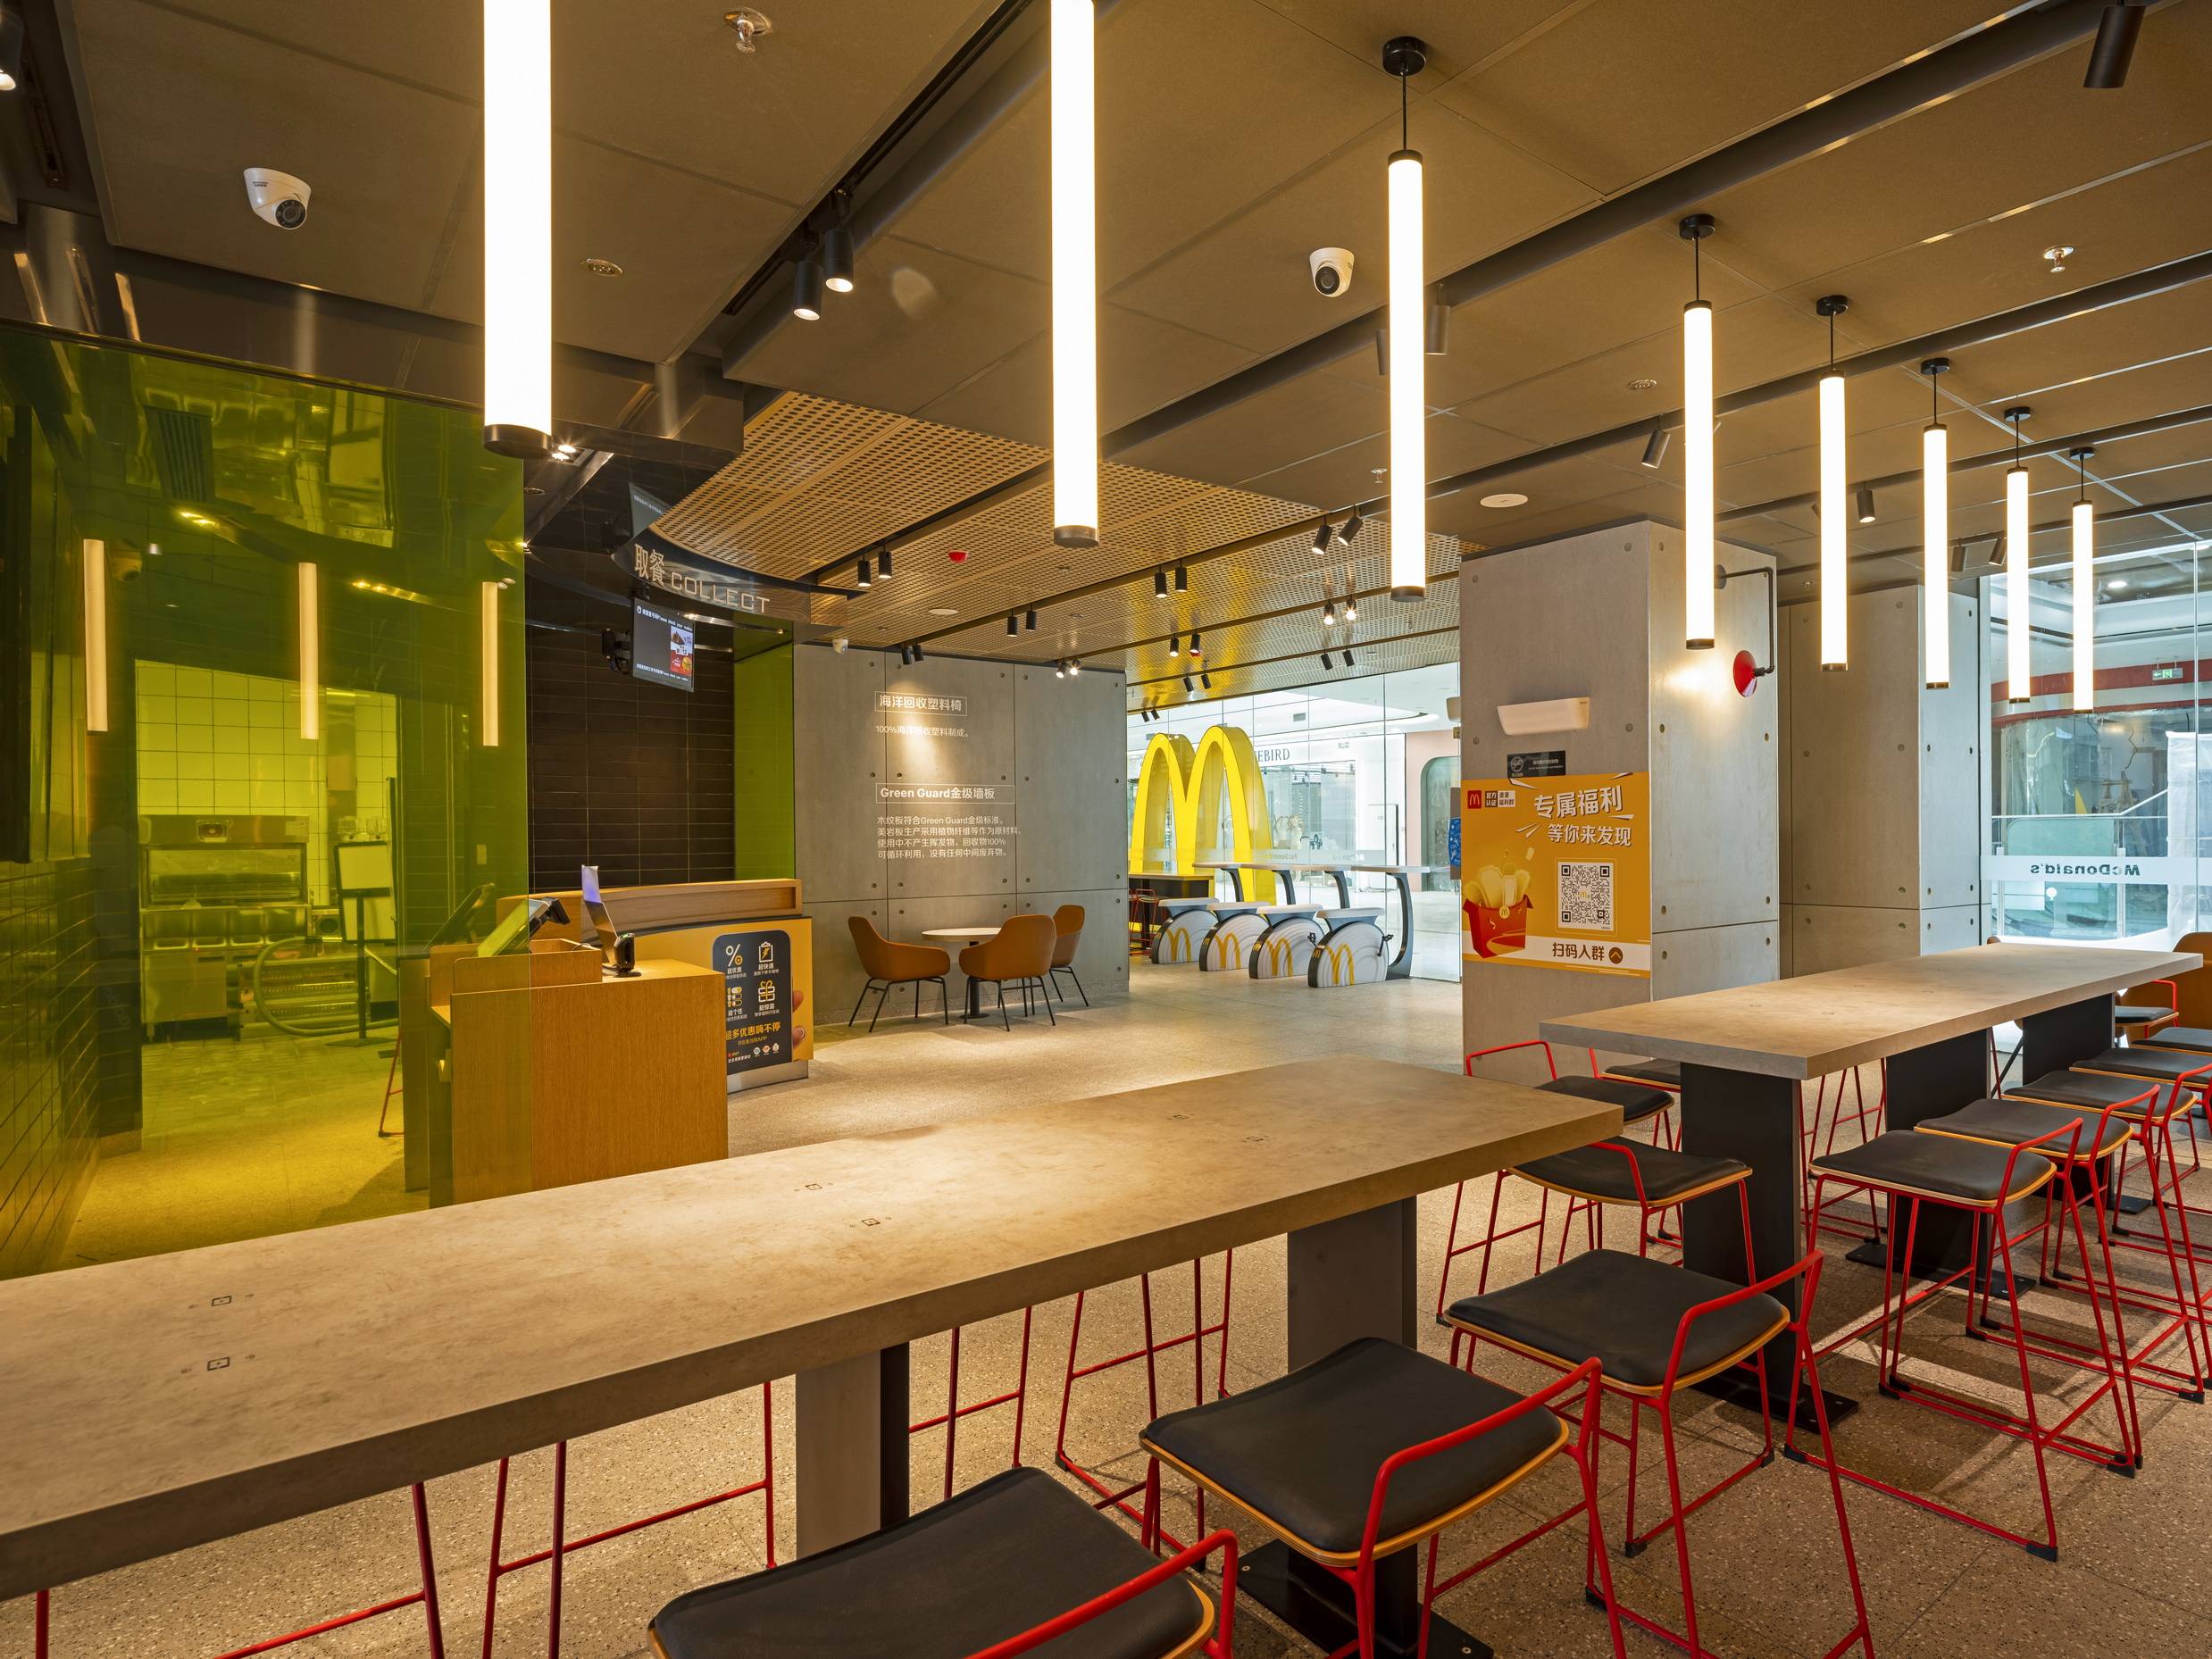 餐厅采用麦当劳全球设计的ray设计风格,简约的工业风与明亮的麦当劳